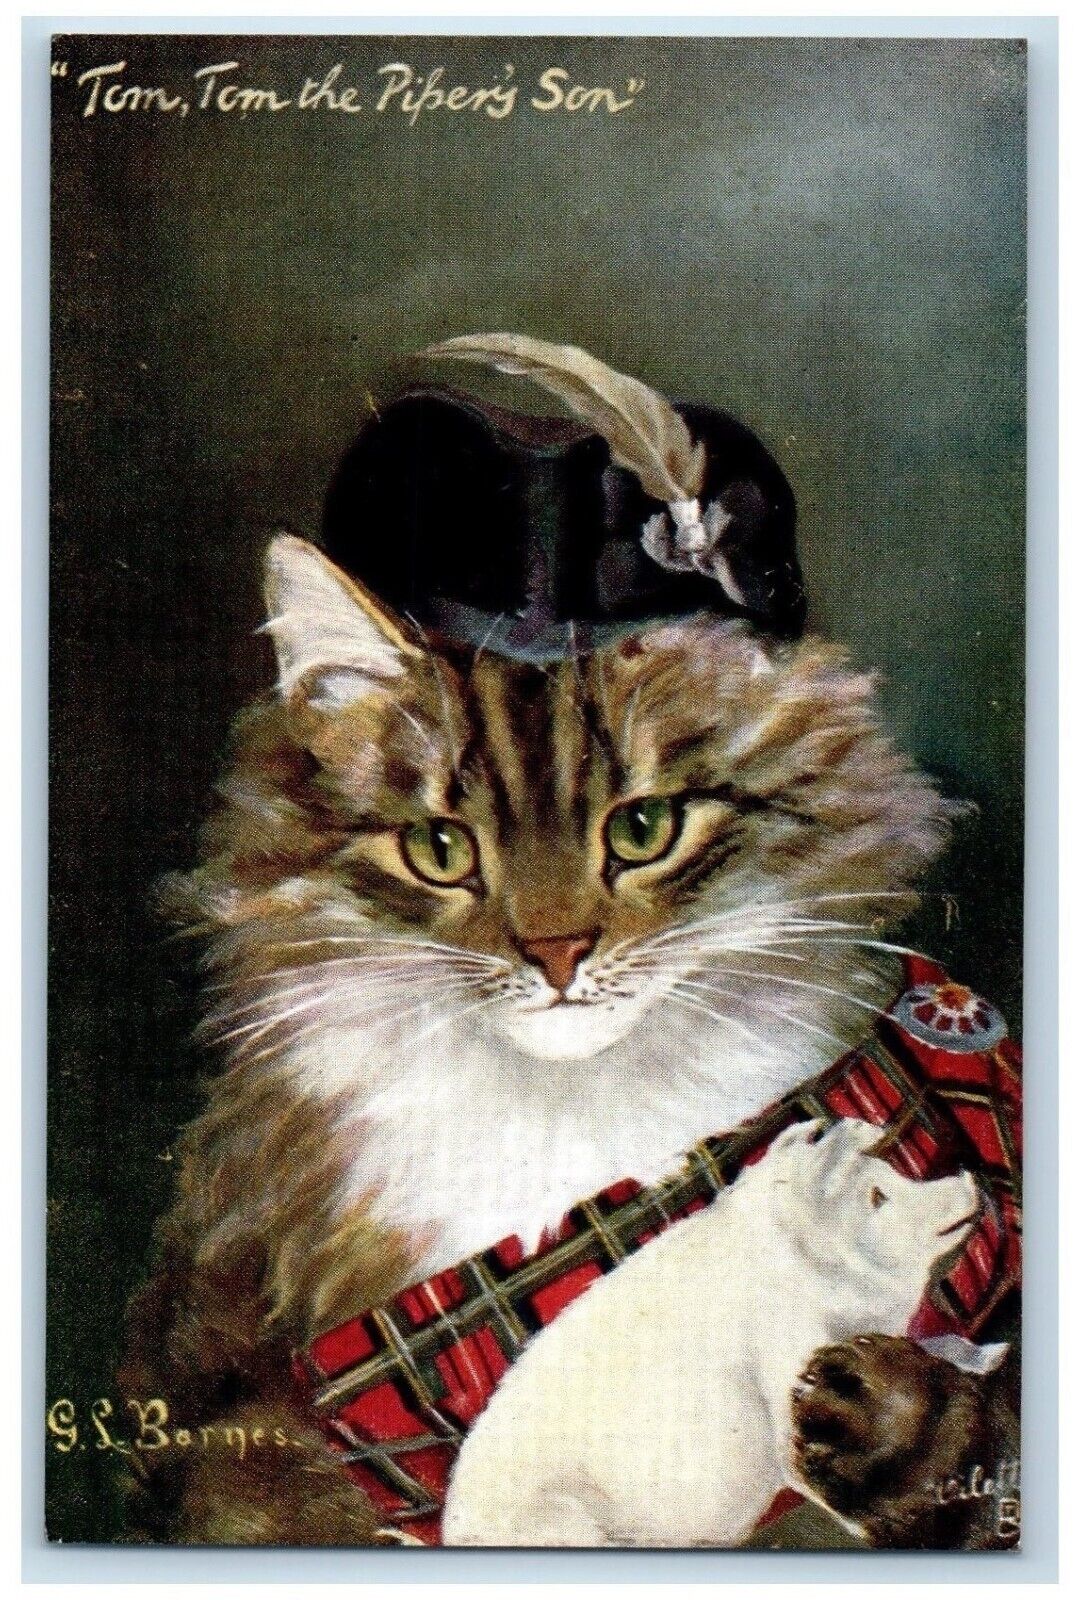 Barnes Signed Postcard Cat Kitten Little Tom Tom The Pipery Son Oilette Tuck\'s